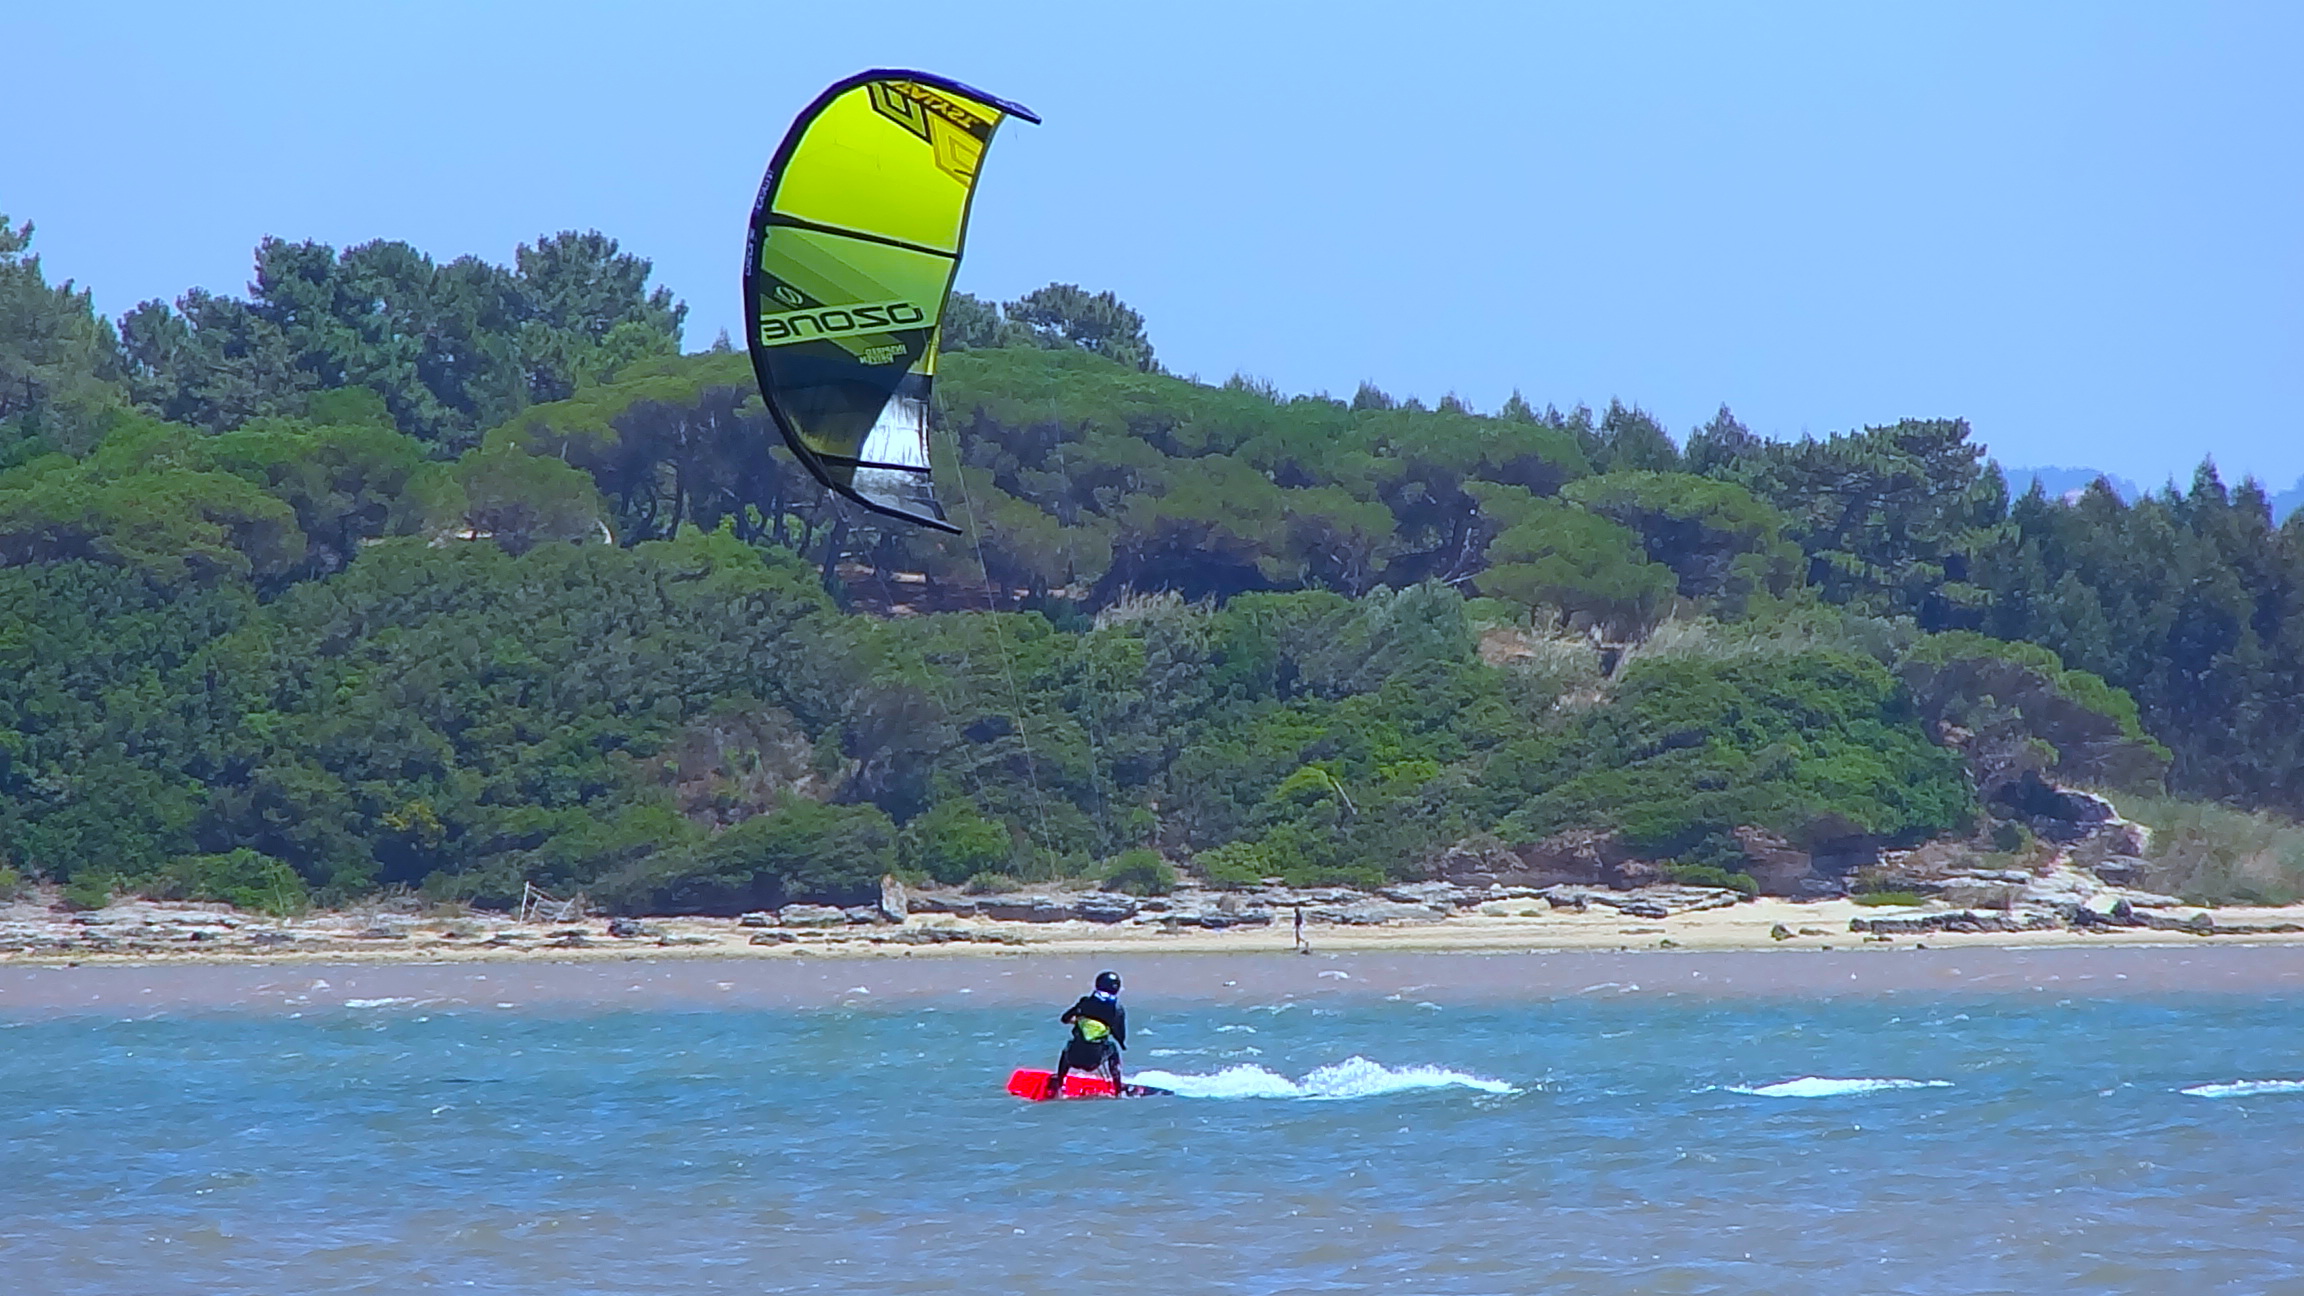 副本风筝冲浪学校Baleal -葡萄牙|风筝控制